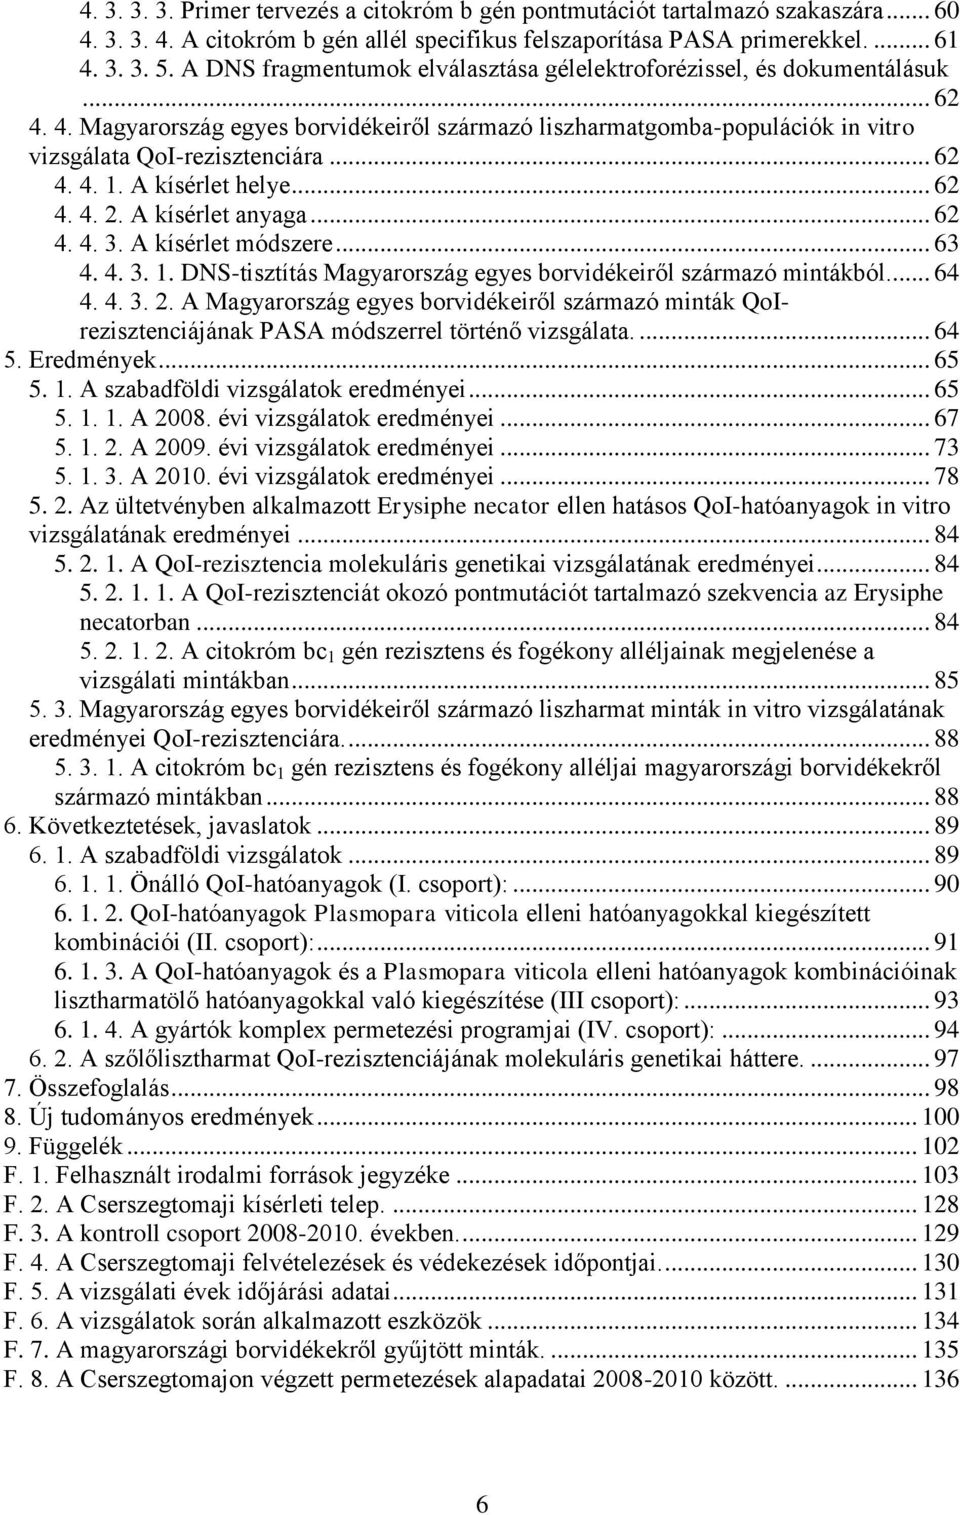 A kísérlet helye... 62 4. 4. 2. A kísérlet anyaga... 62 4. 4. 3. A kísérlet módszere... 63 4. 4. 3. 1. DNS-tisztítás Magyarország egyes borvidékeiről származó mintákból... 64 4. 4. 3. 2. A Magyarország egyes borvidékeiről származó minták QoIrezisztenciájának PASA módszerrel történő vizsgálata.